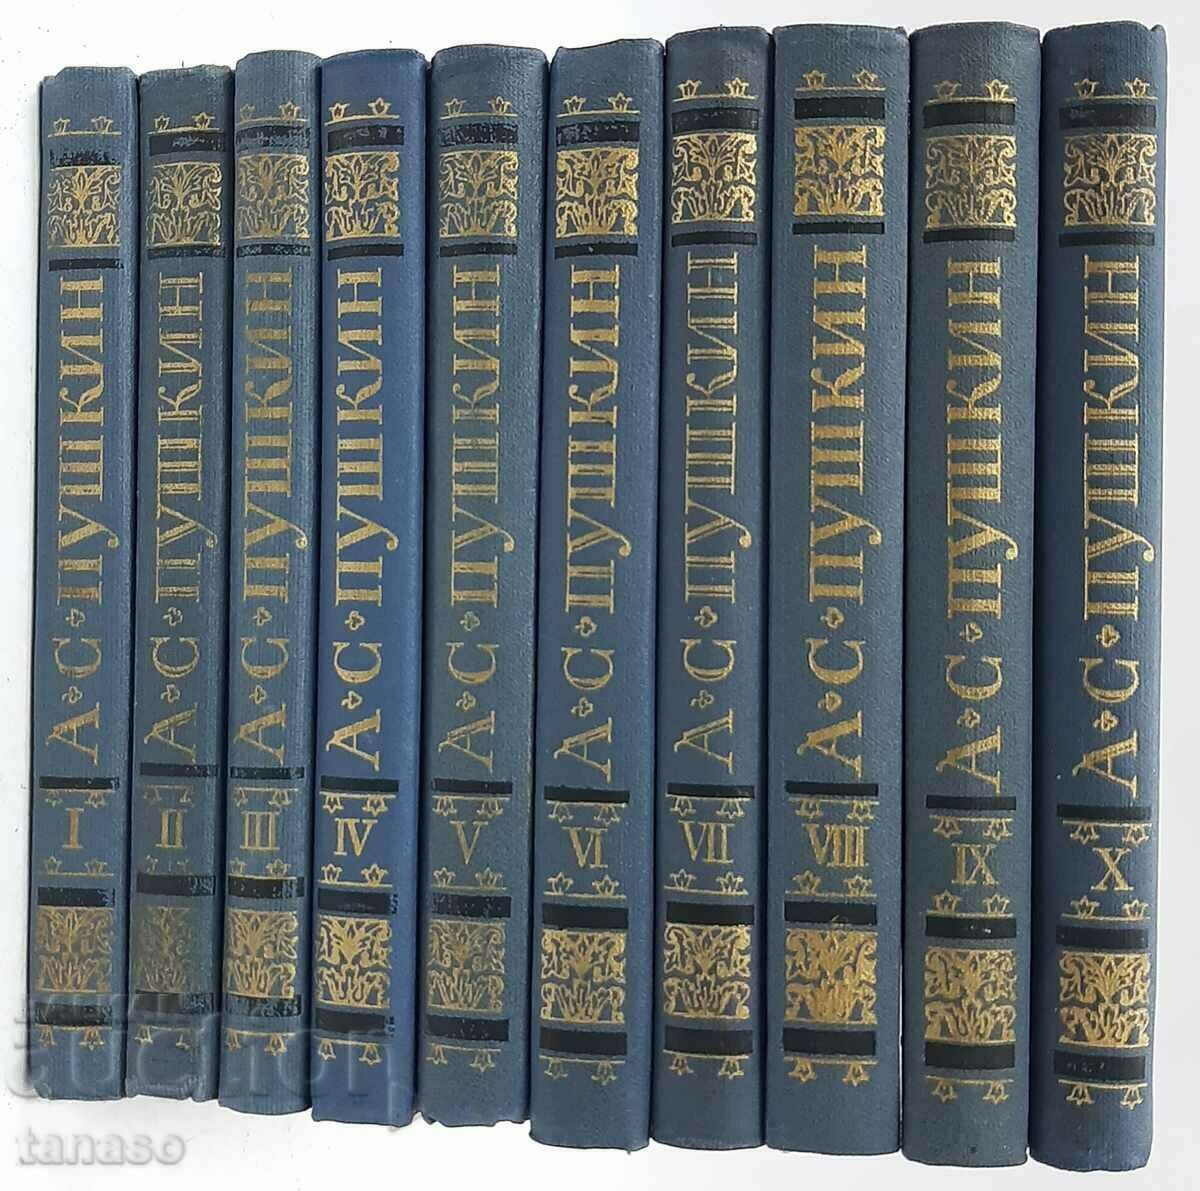 O colecție de lucrări în zece volume. A.S. Pușkin. Volumul 1-10